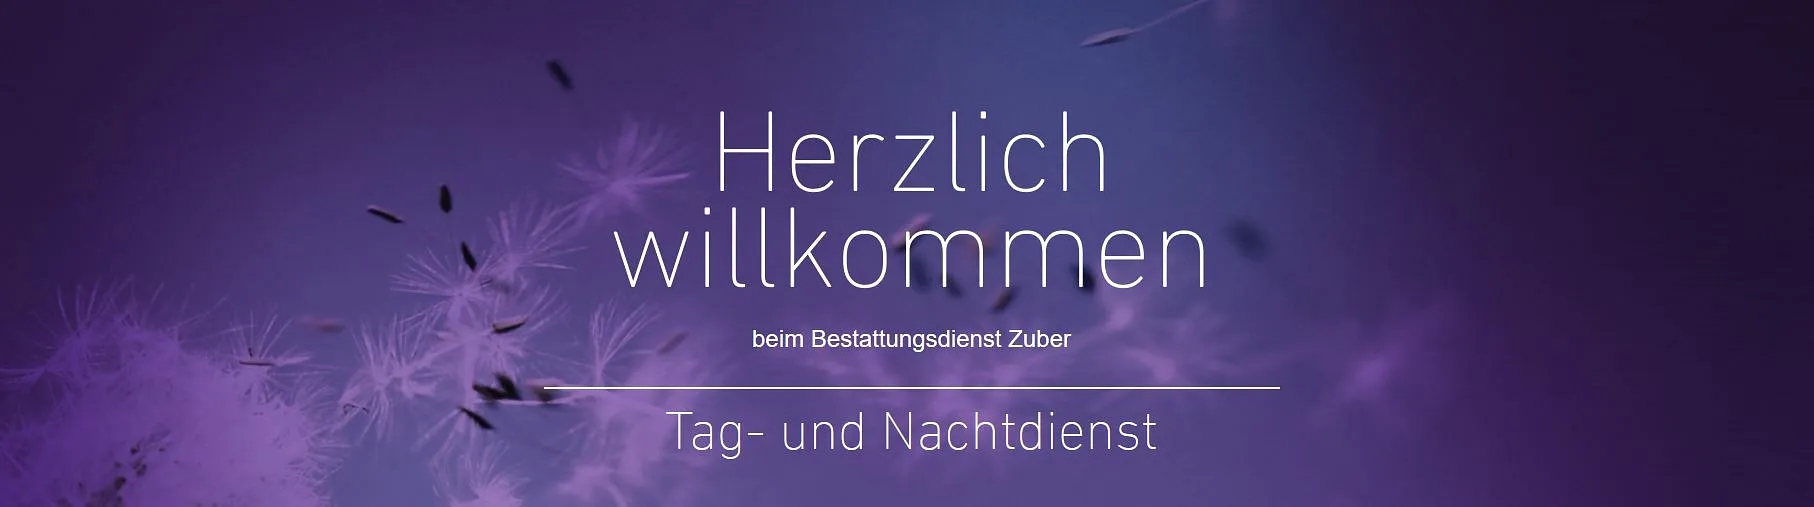 Bestattungsdienst Zuber GmbH